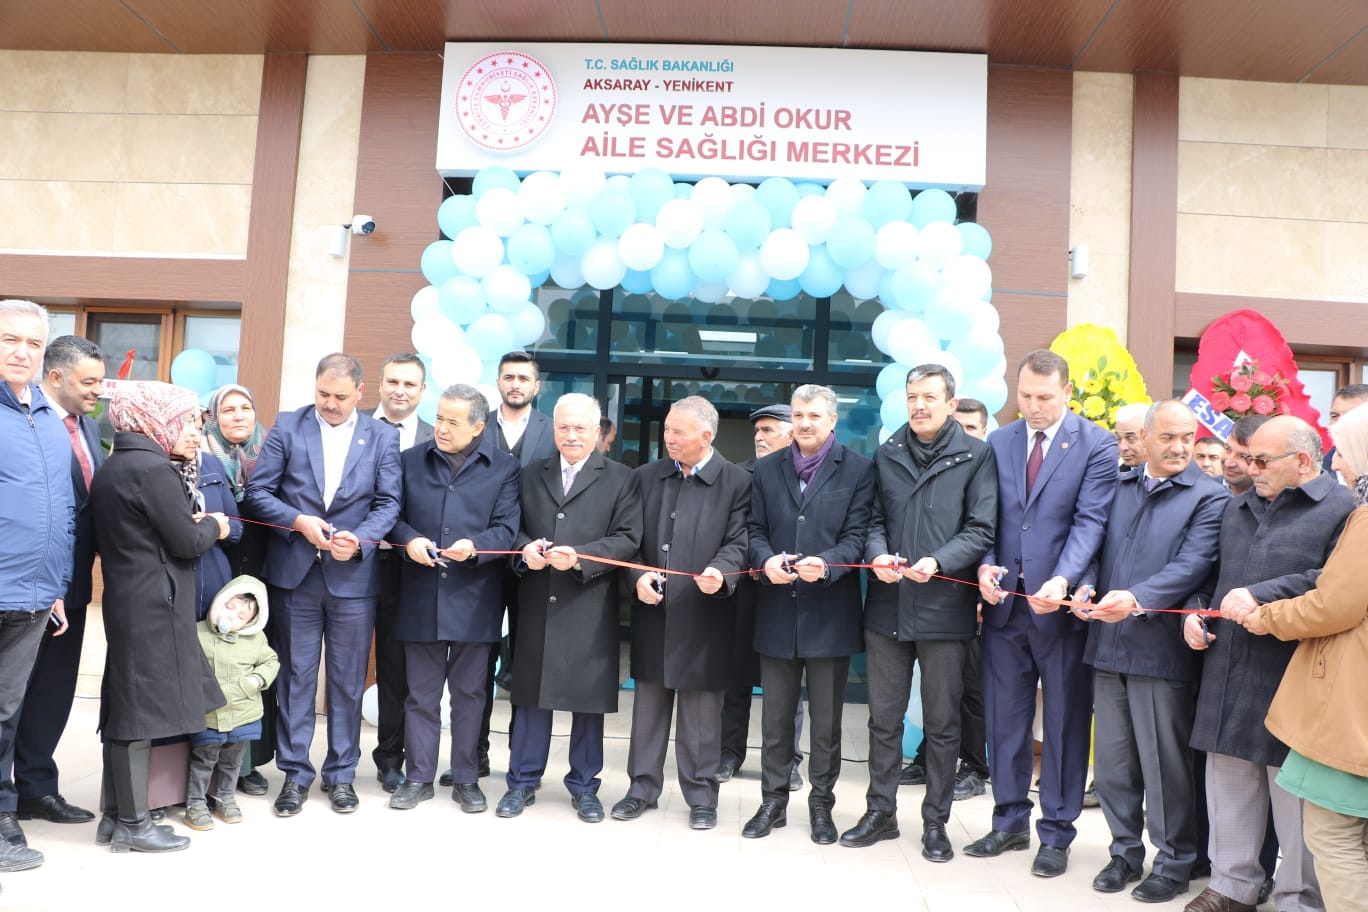 Yenikent Ayşe ve Abdi Okur Aile Sağlığı Merkezi törenle açıldı